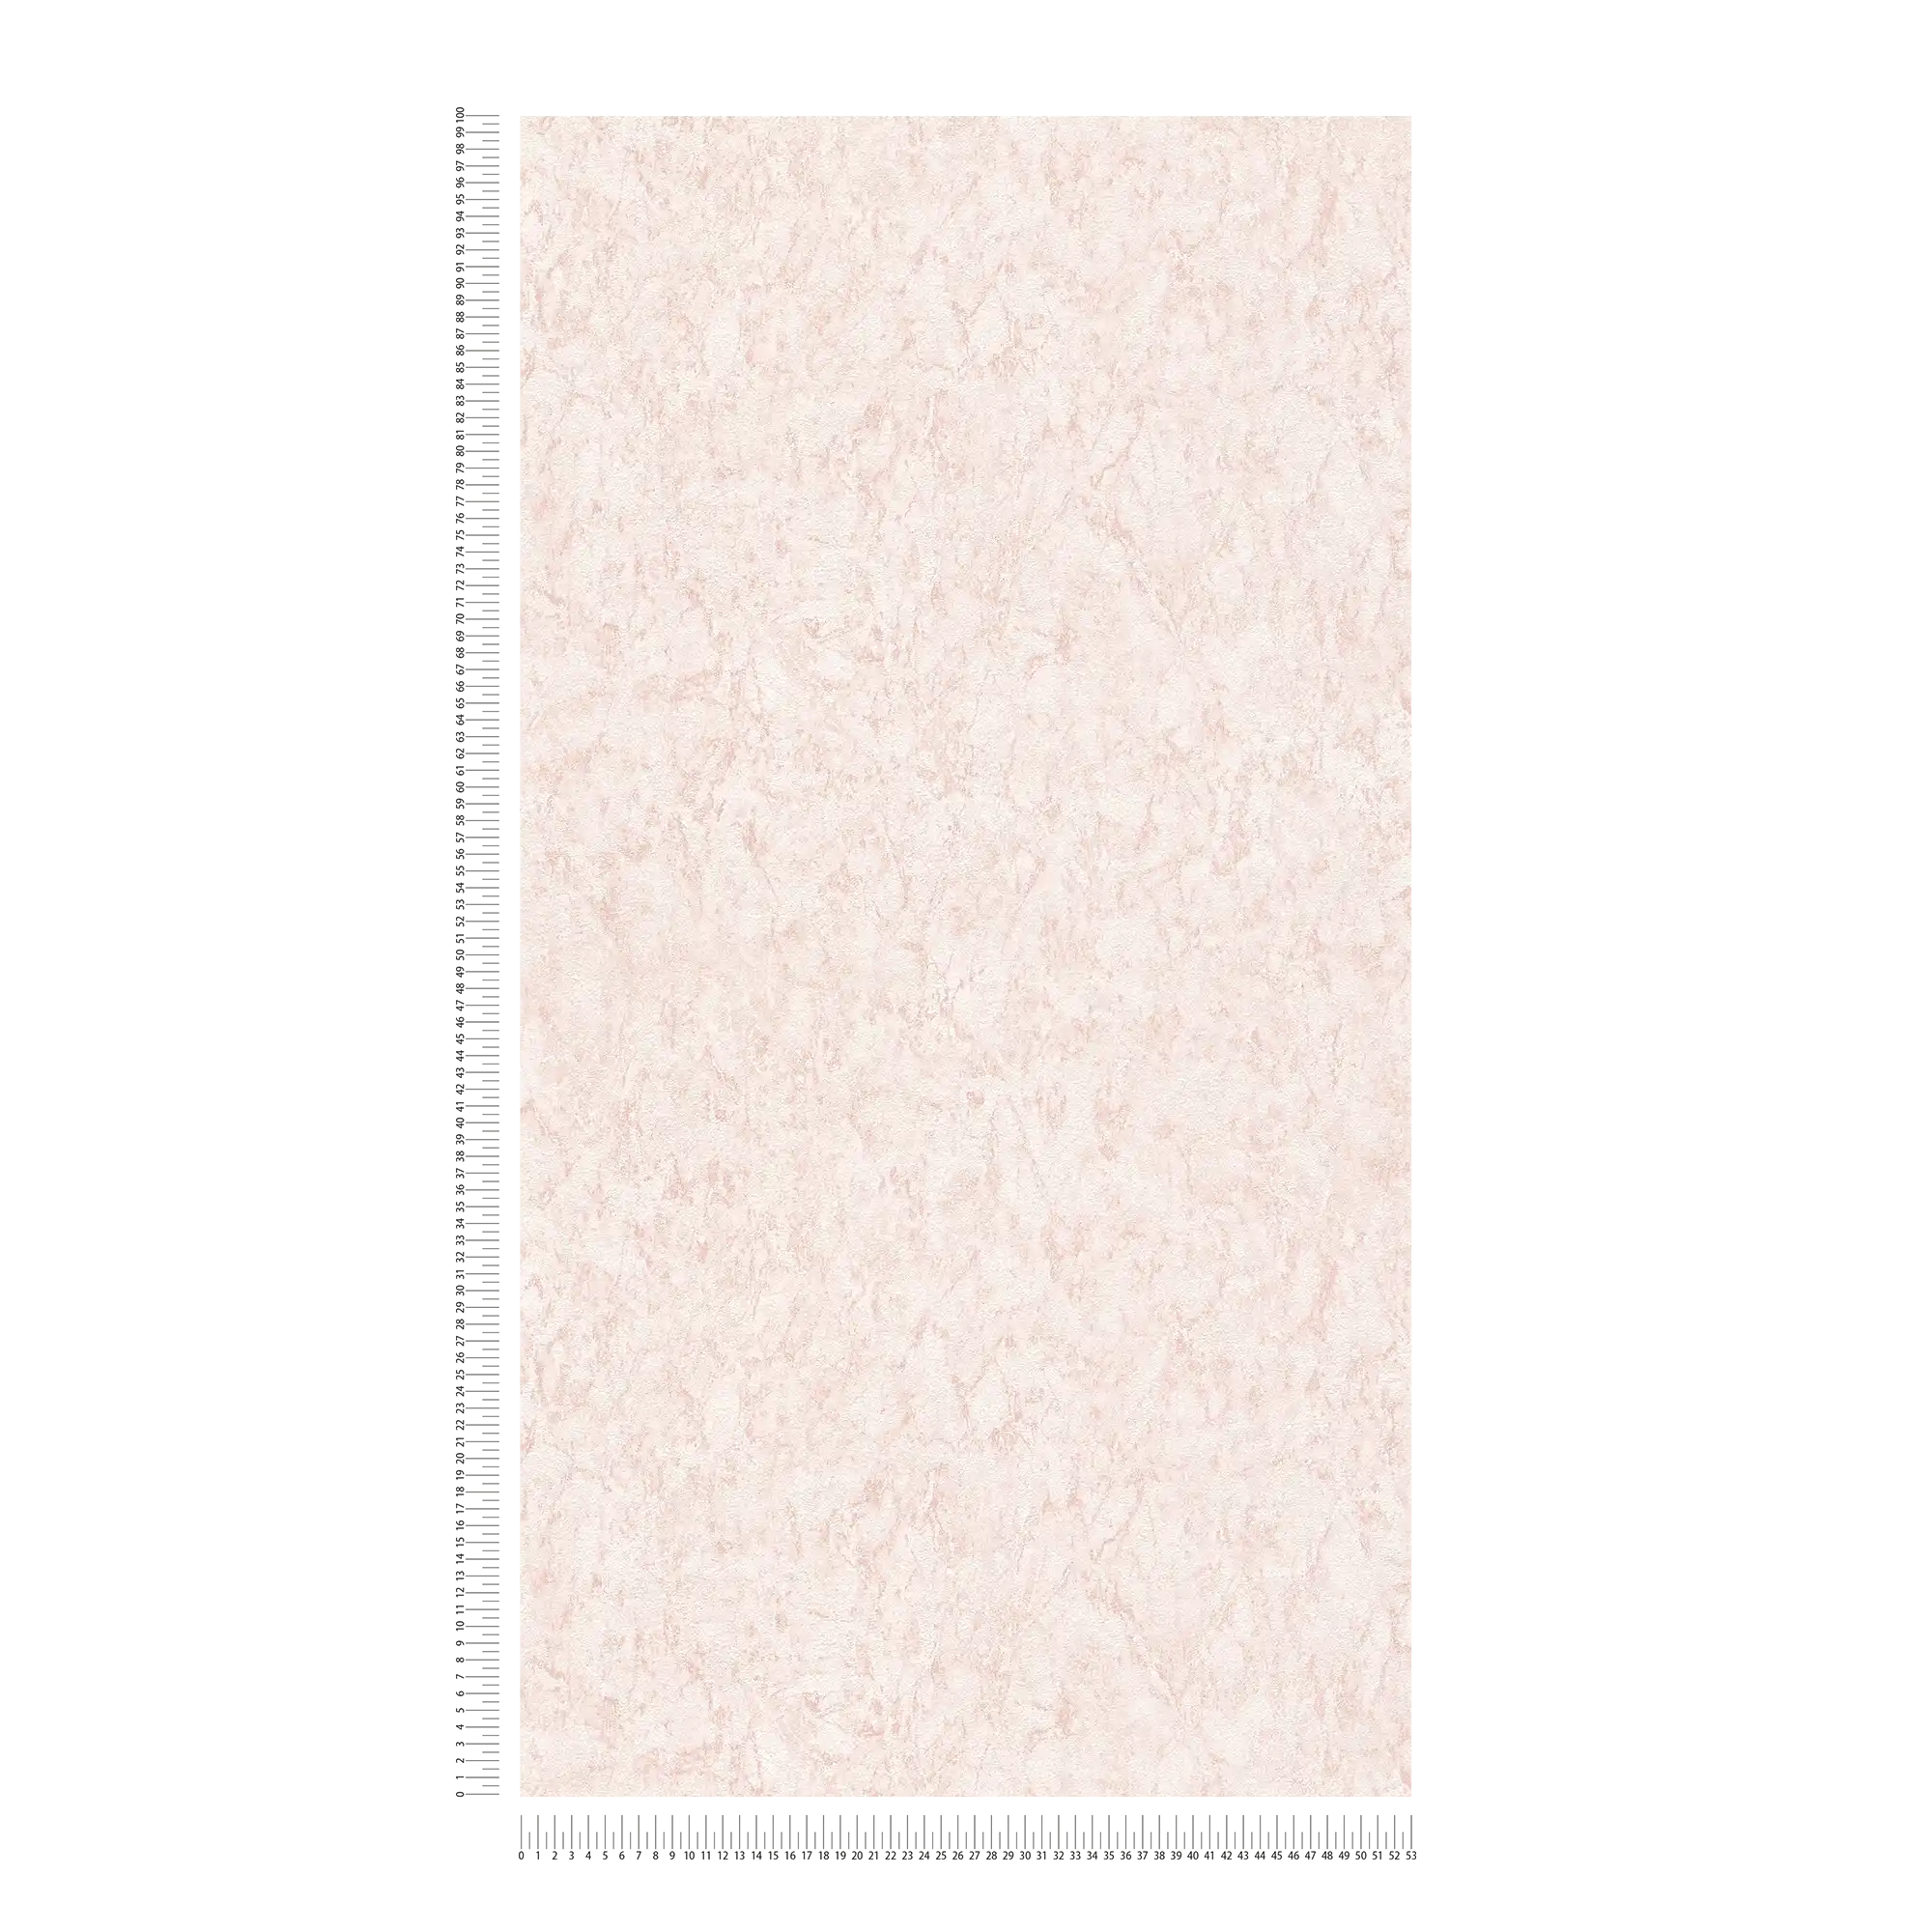             Papel pintado unitario con efecto texturizado y diseño moteado - rosa, crema
        